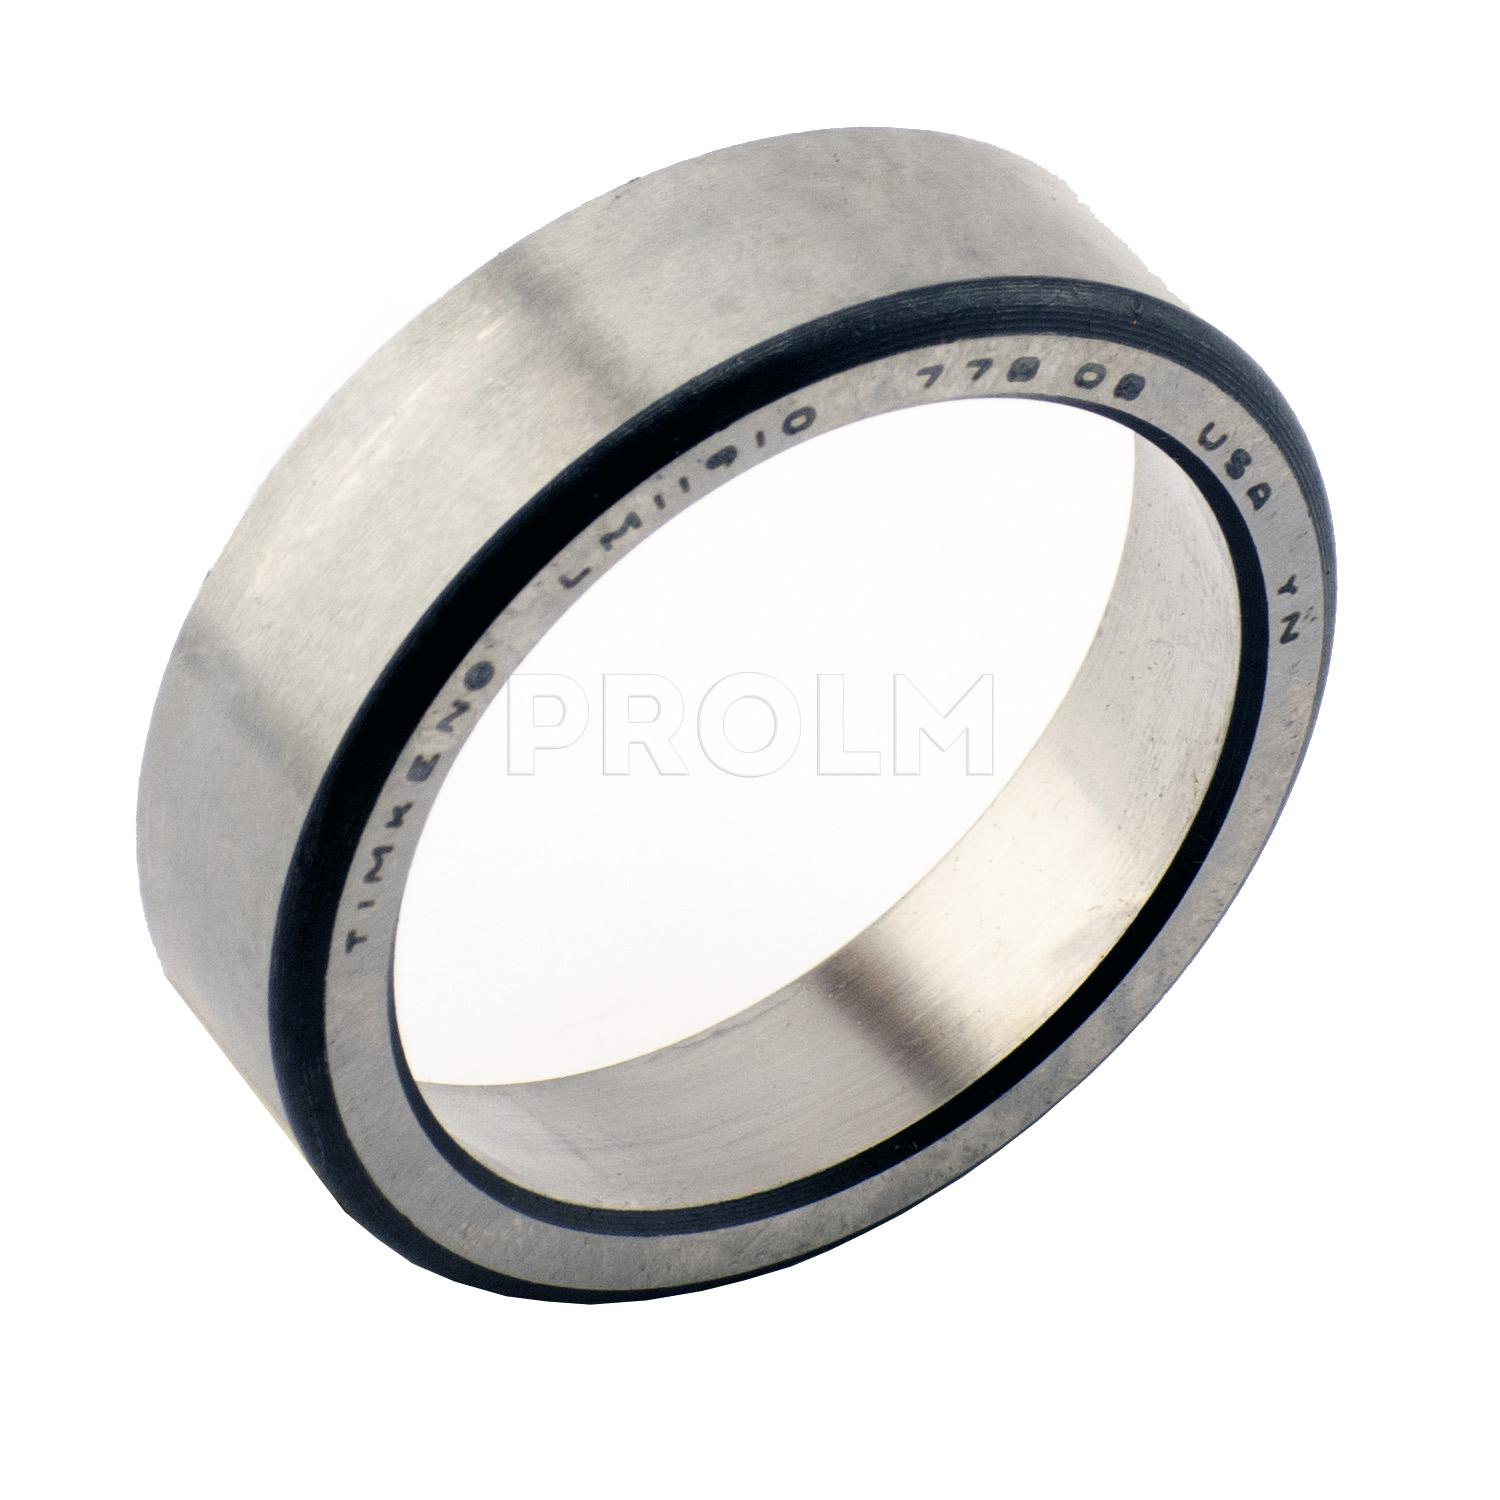 Наружное кольцо конического подшипника  TIMKEN LM11910 (LM11910-20024)